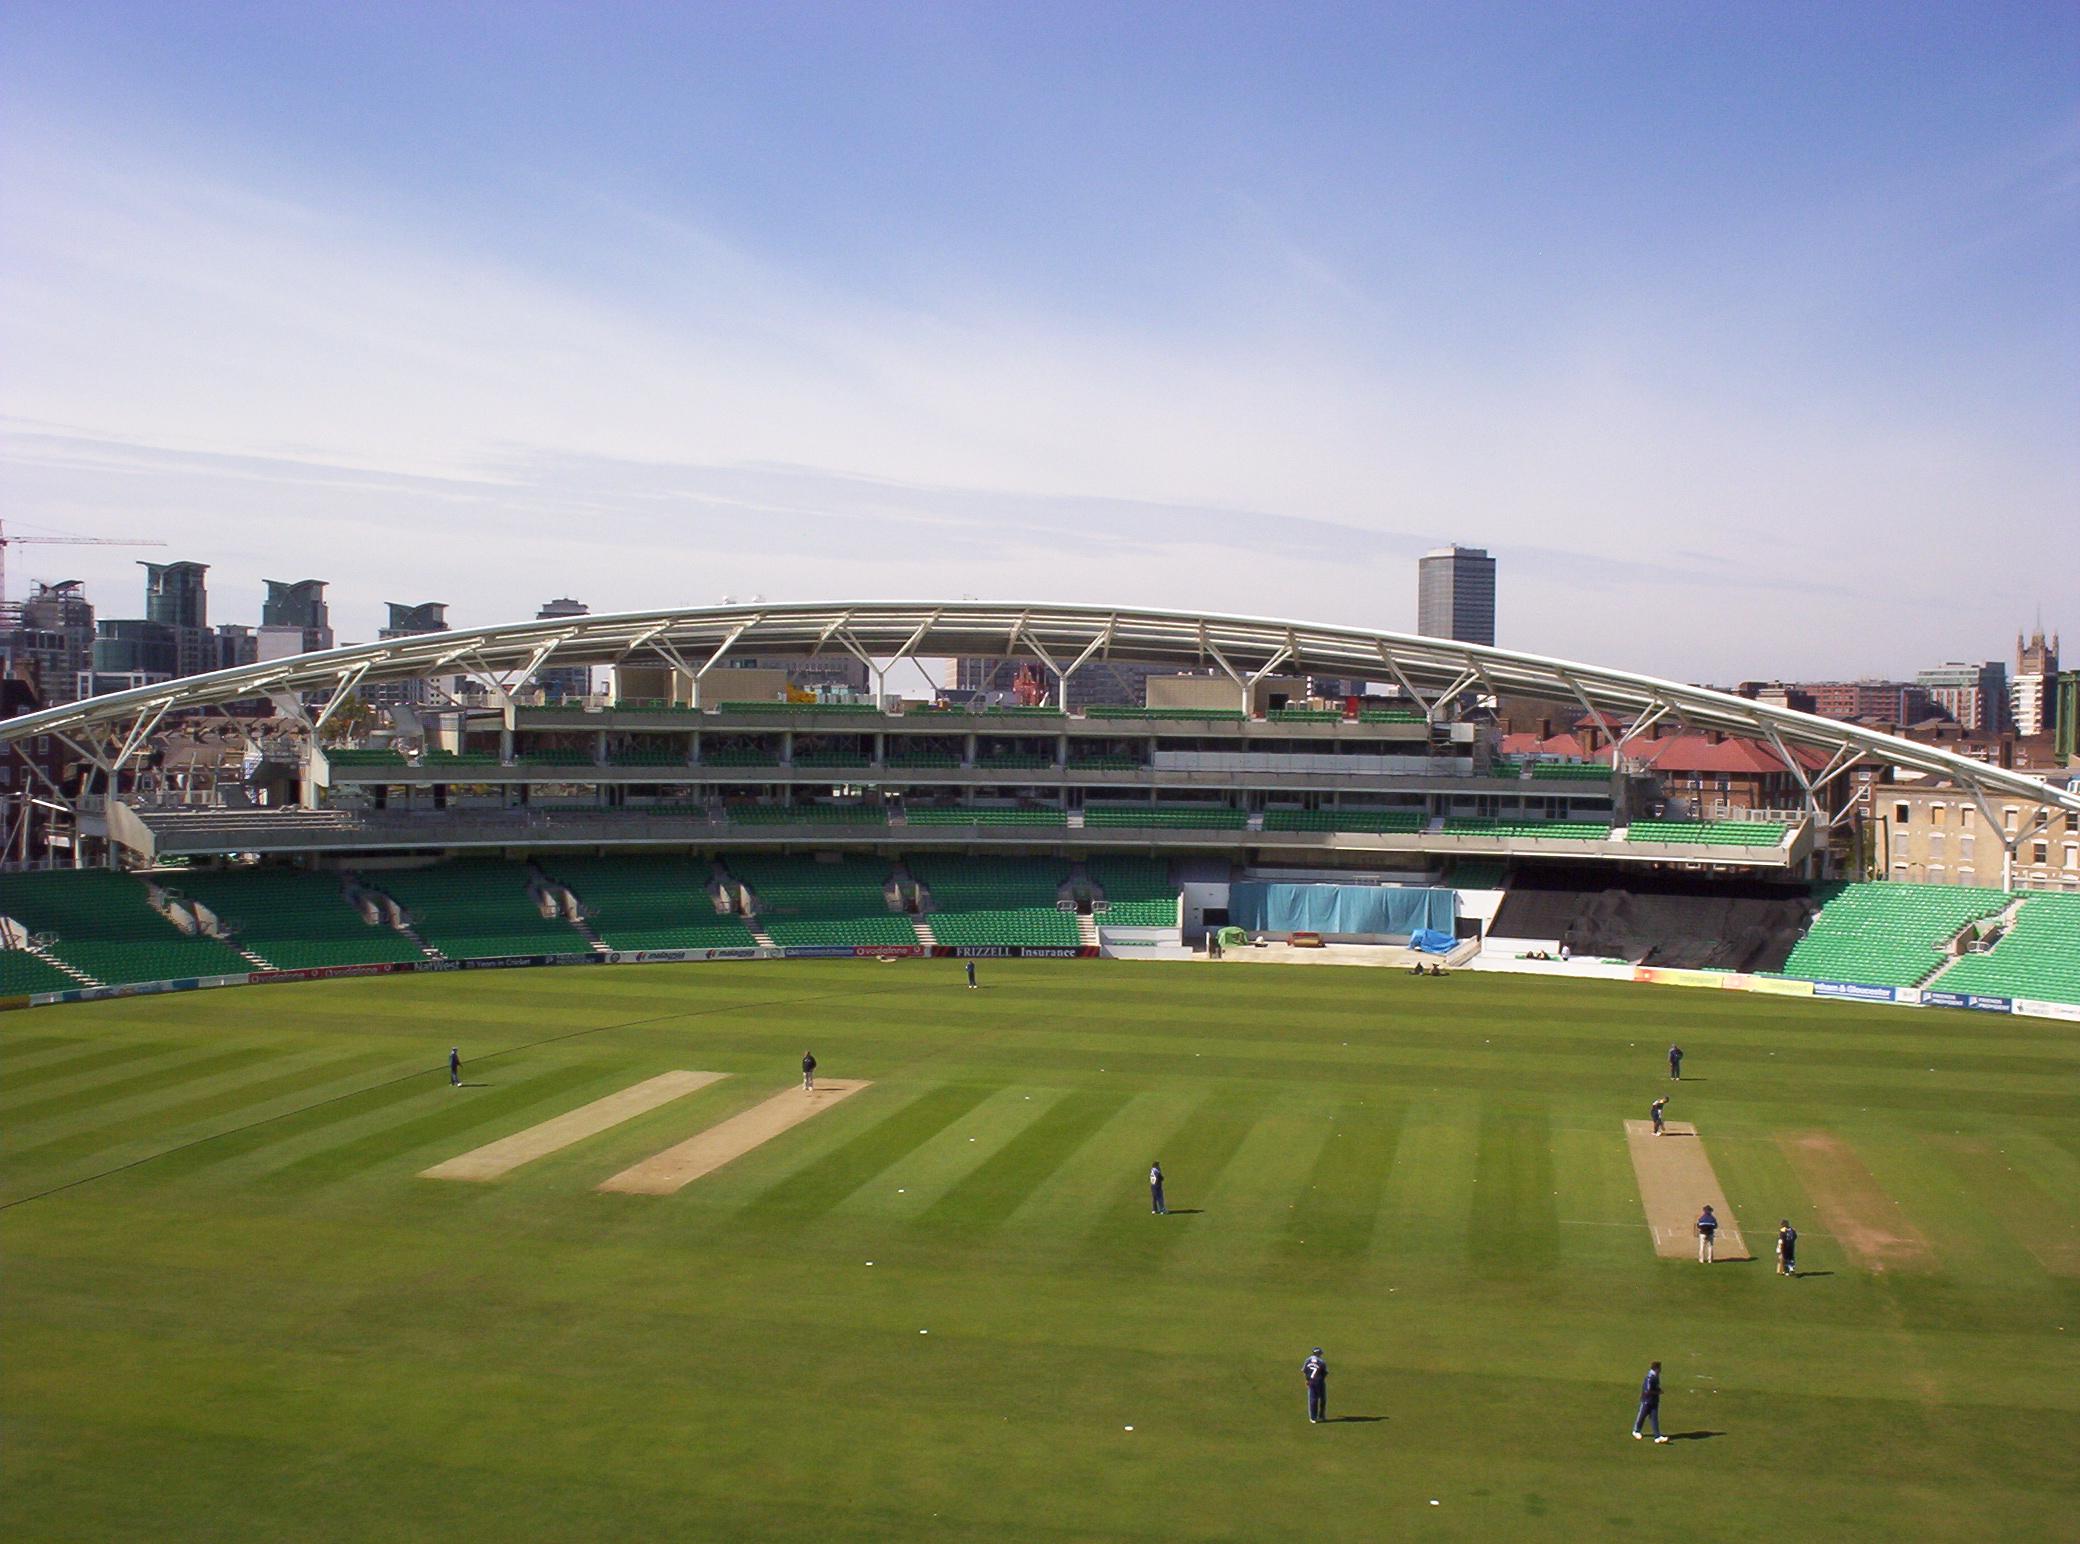 The Oval, London, England | Source: Wikimedia